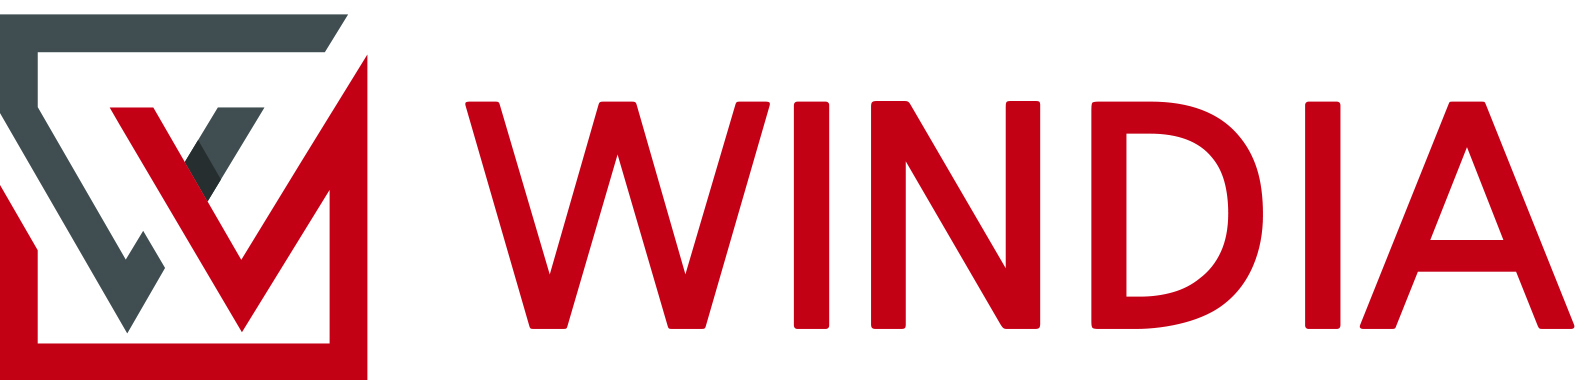 WINDIA Inc logo image